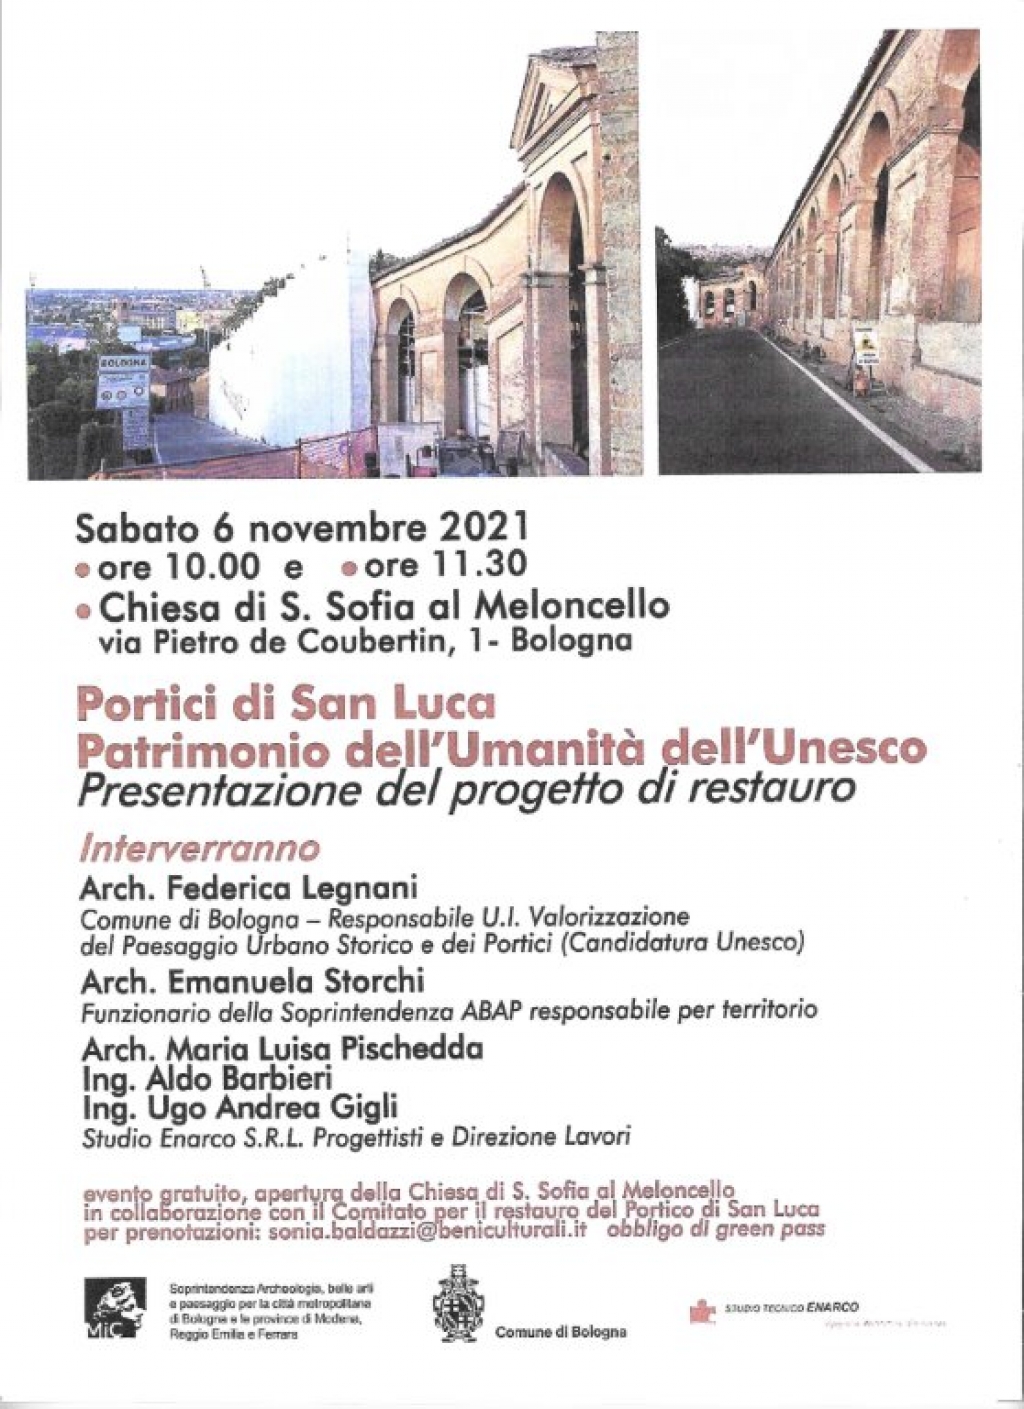 Portici di San Luca: Patrimonio dell'Umanità dell'Unesco - Presentazione del progetto di restauro